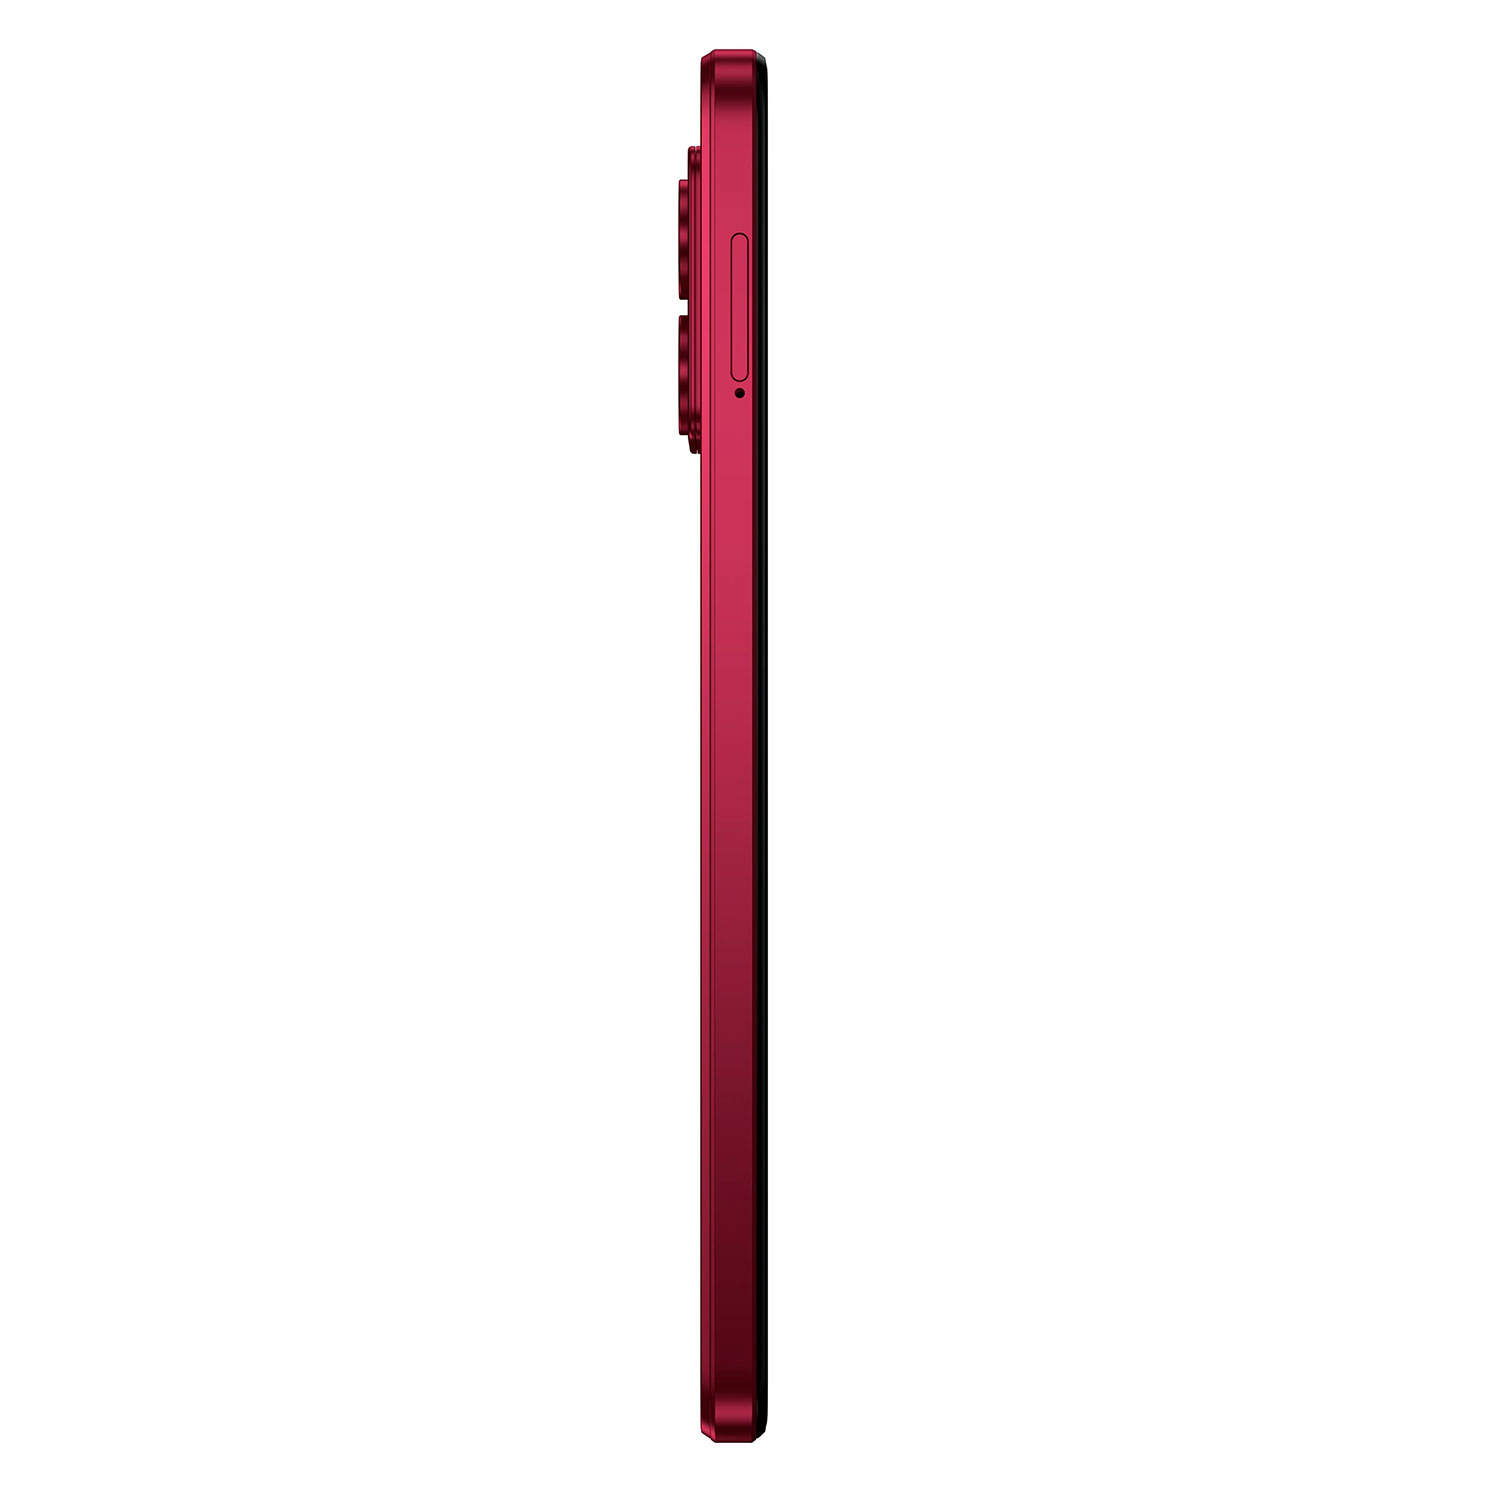 Smartphone Motorola Moto G84 5G XT-2347-1 256GB 8GB RAM Dual SIM Tela 6.5" - Vermelho